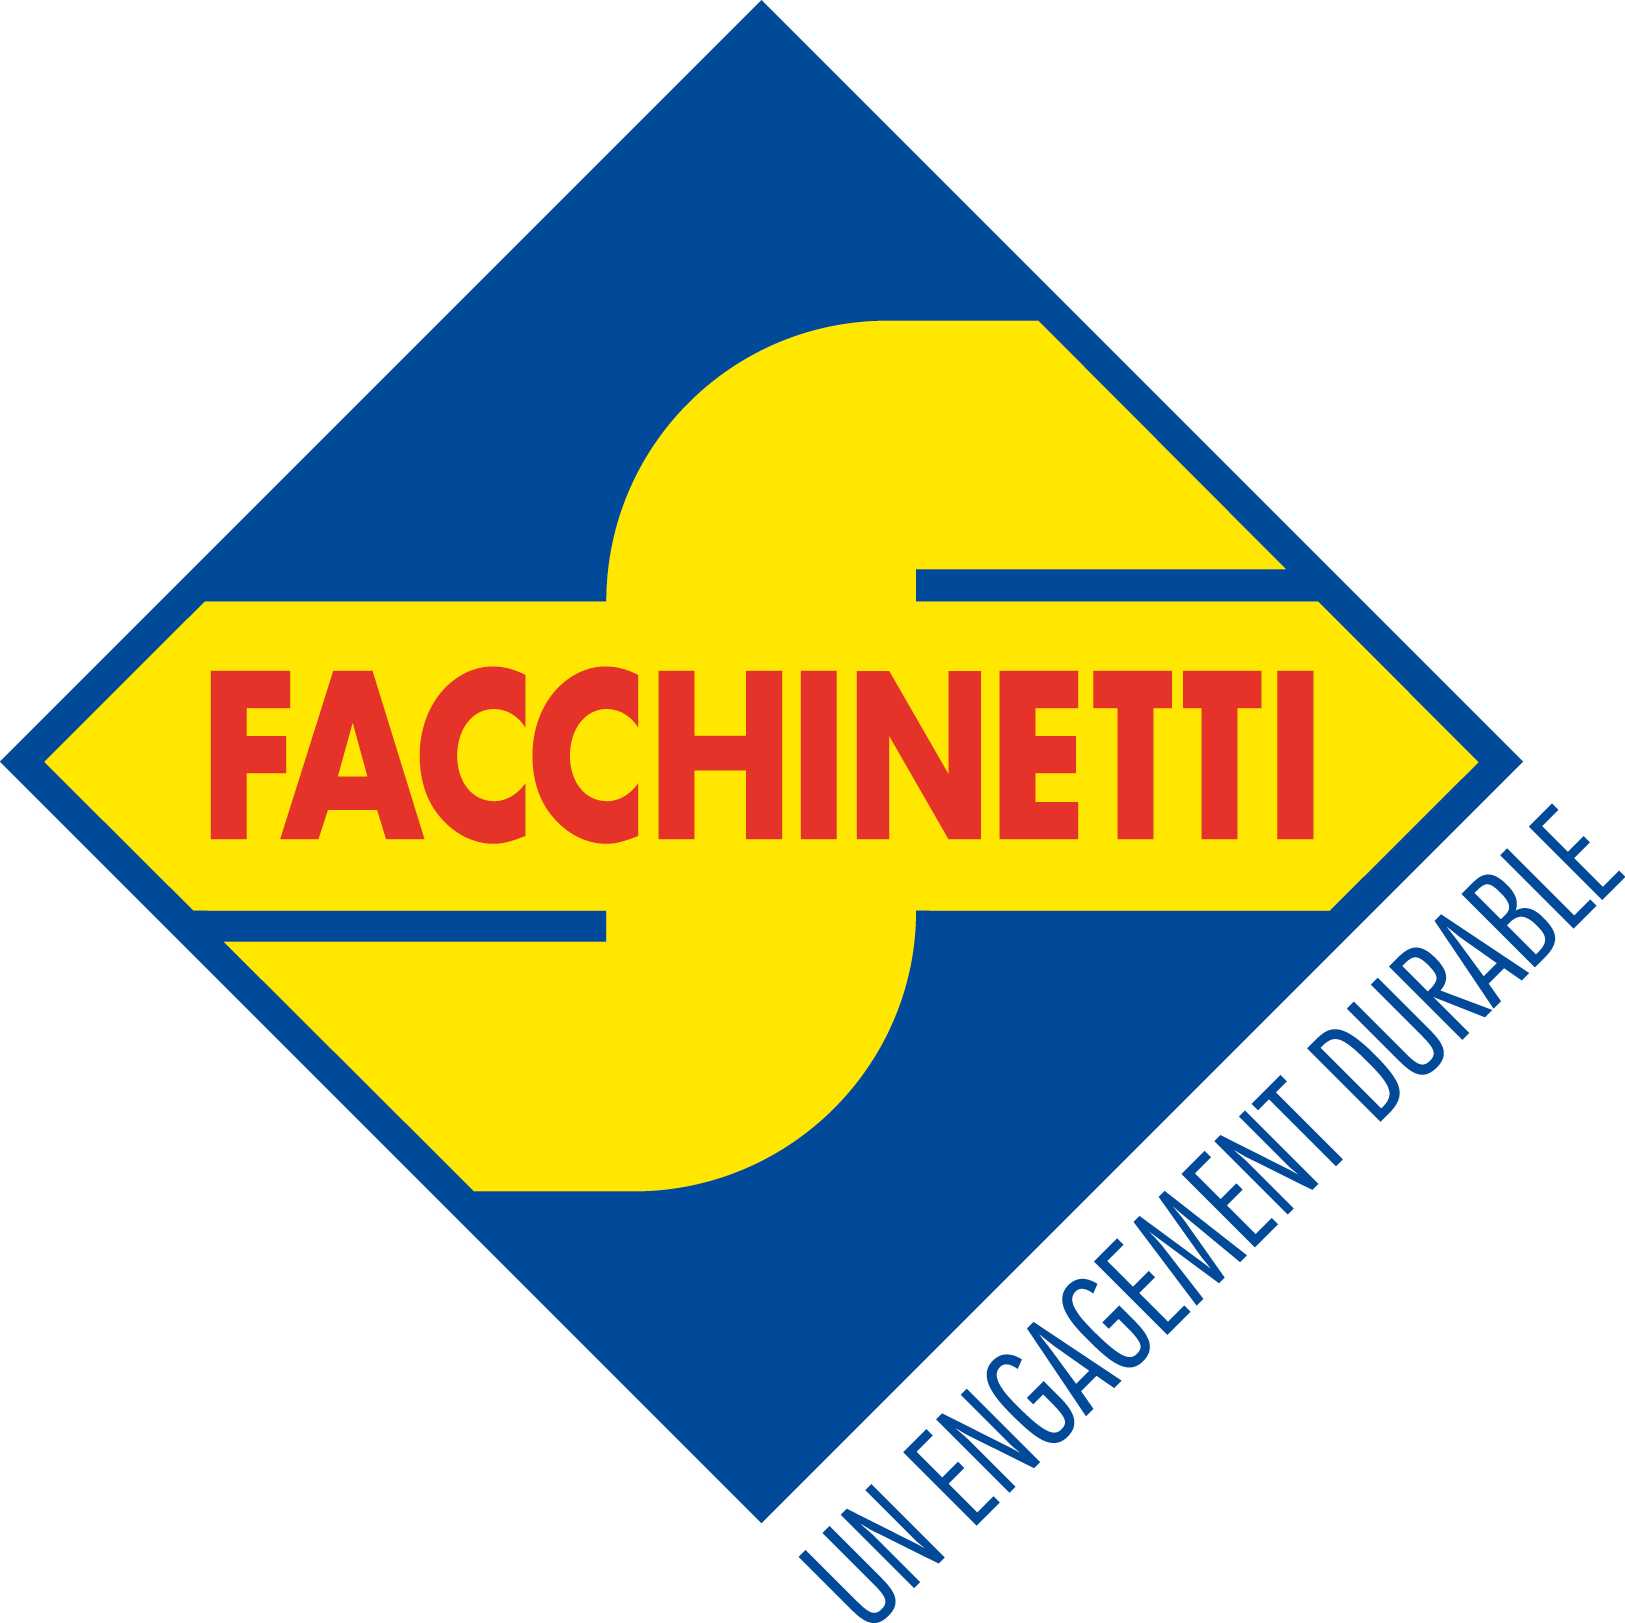 S. Facchinetti SA